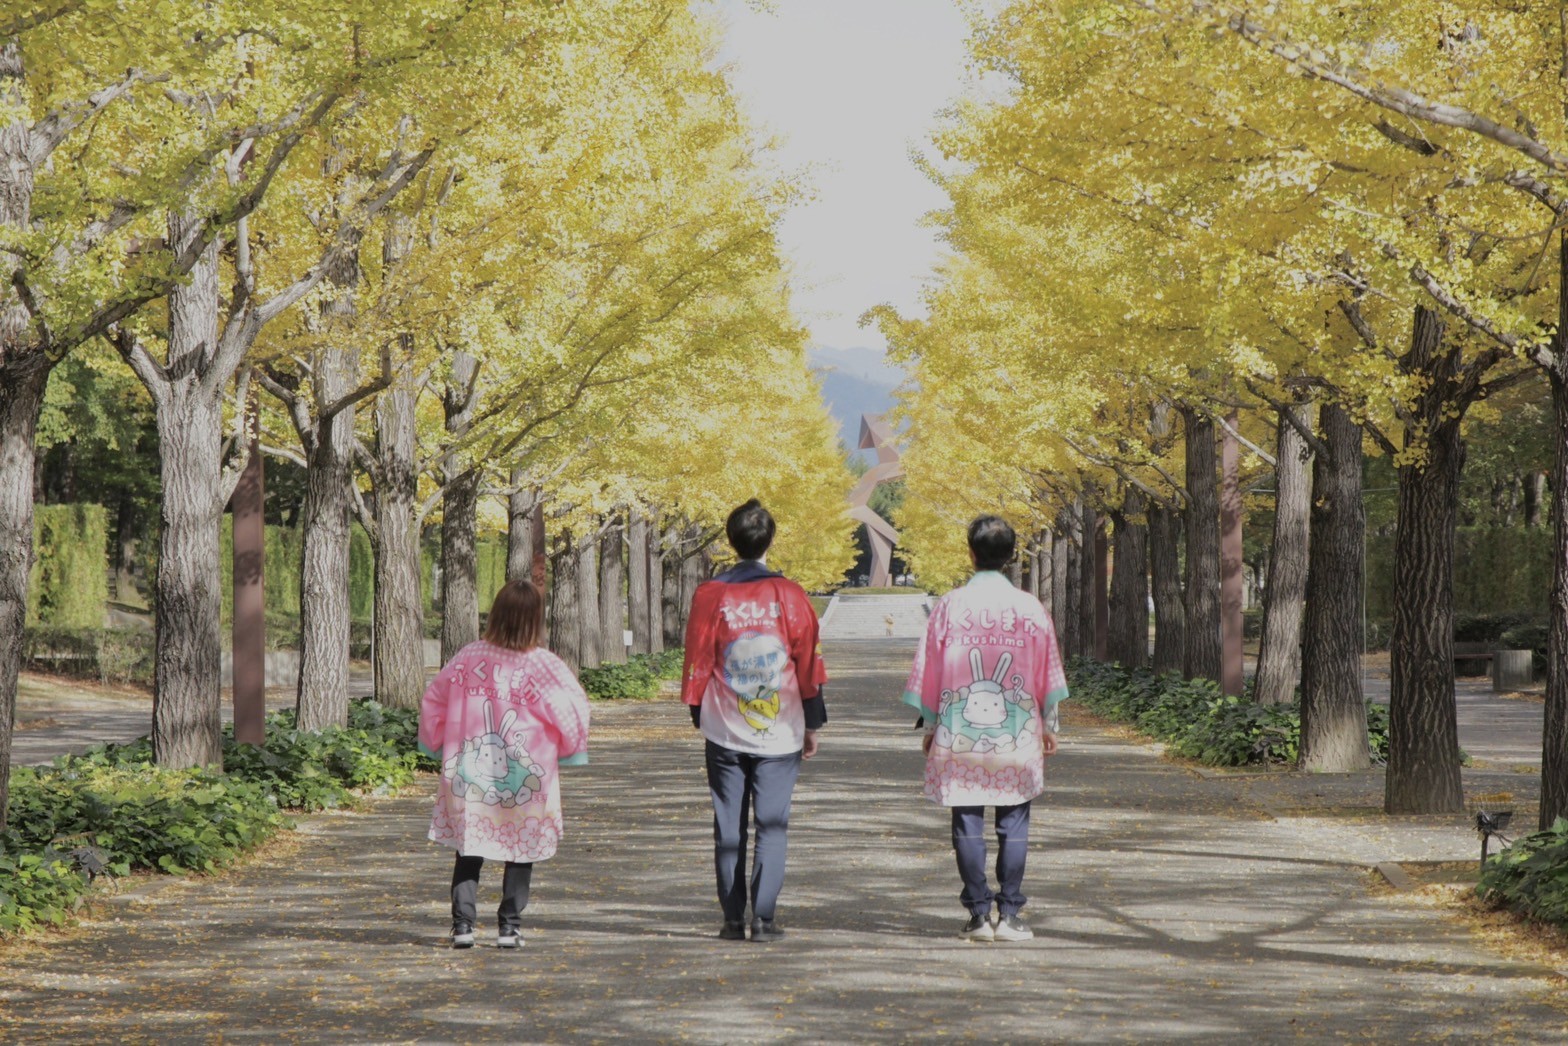 福島市觀光處的工作人員也可愛的在並木之間走起了台步（這必須加薪吧）。